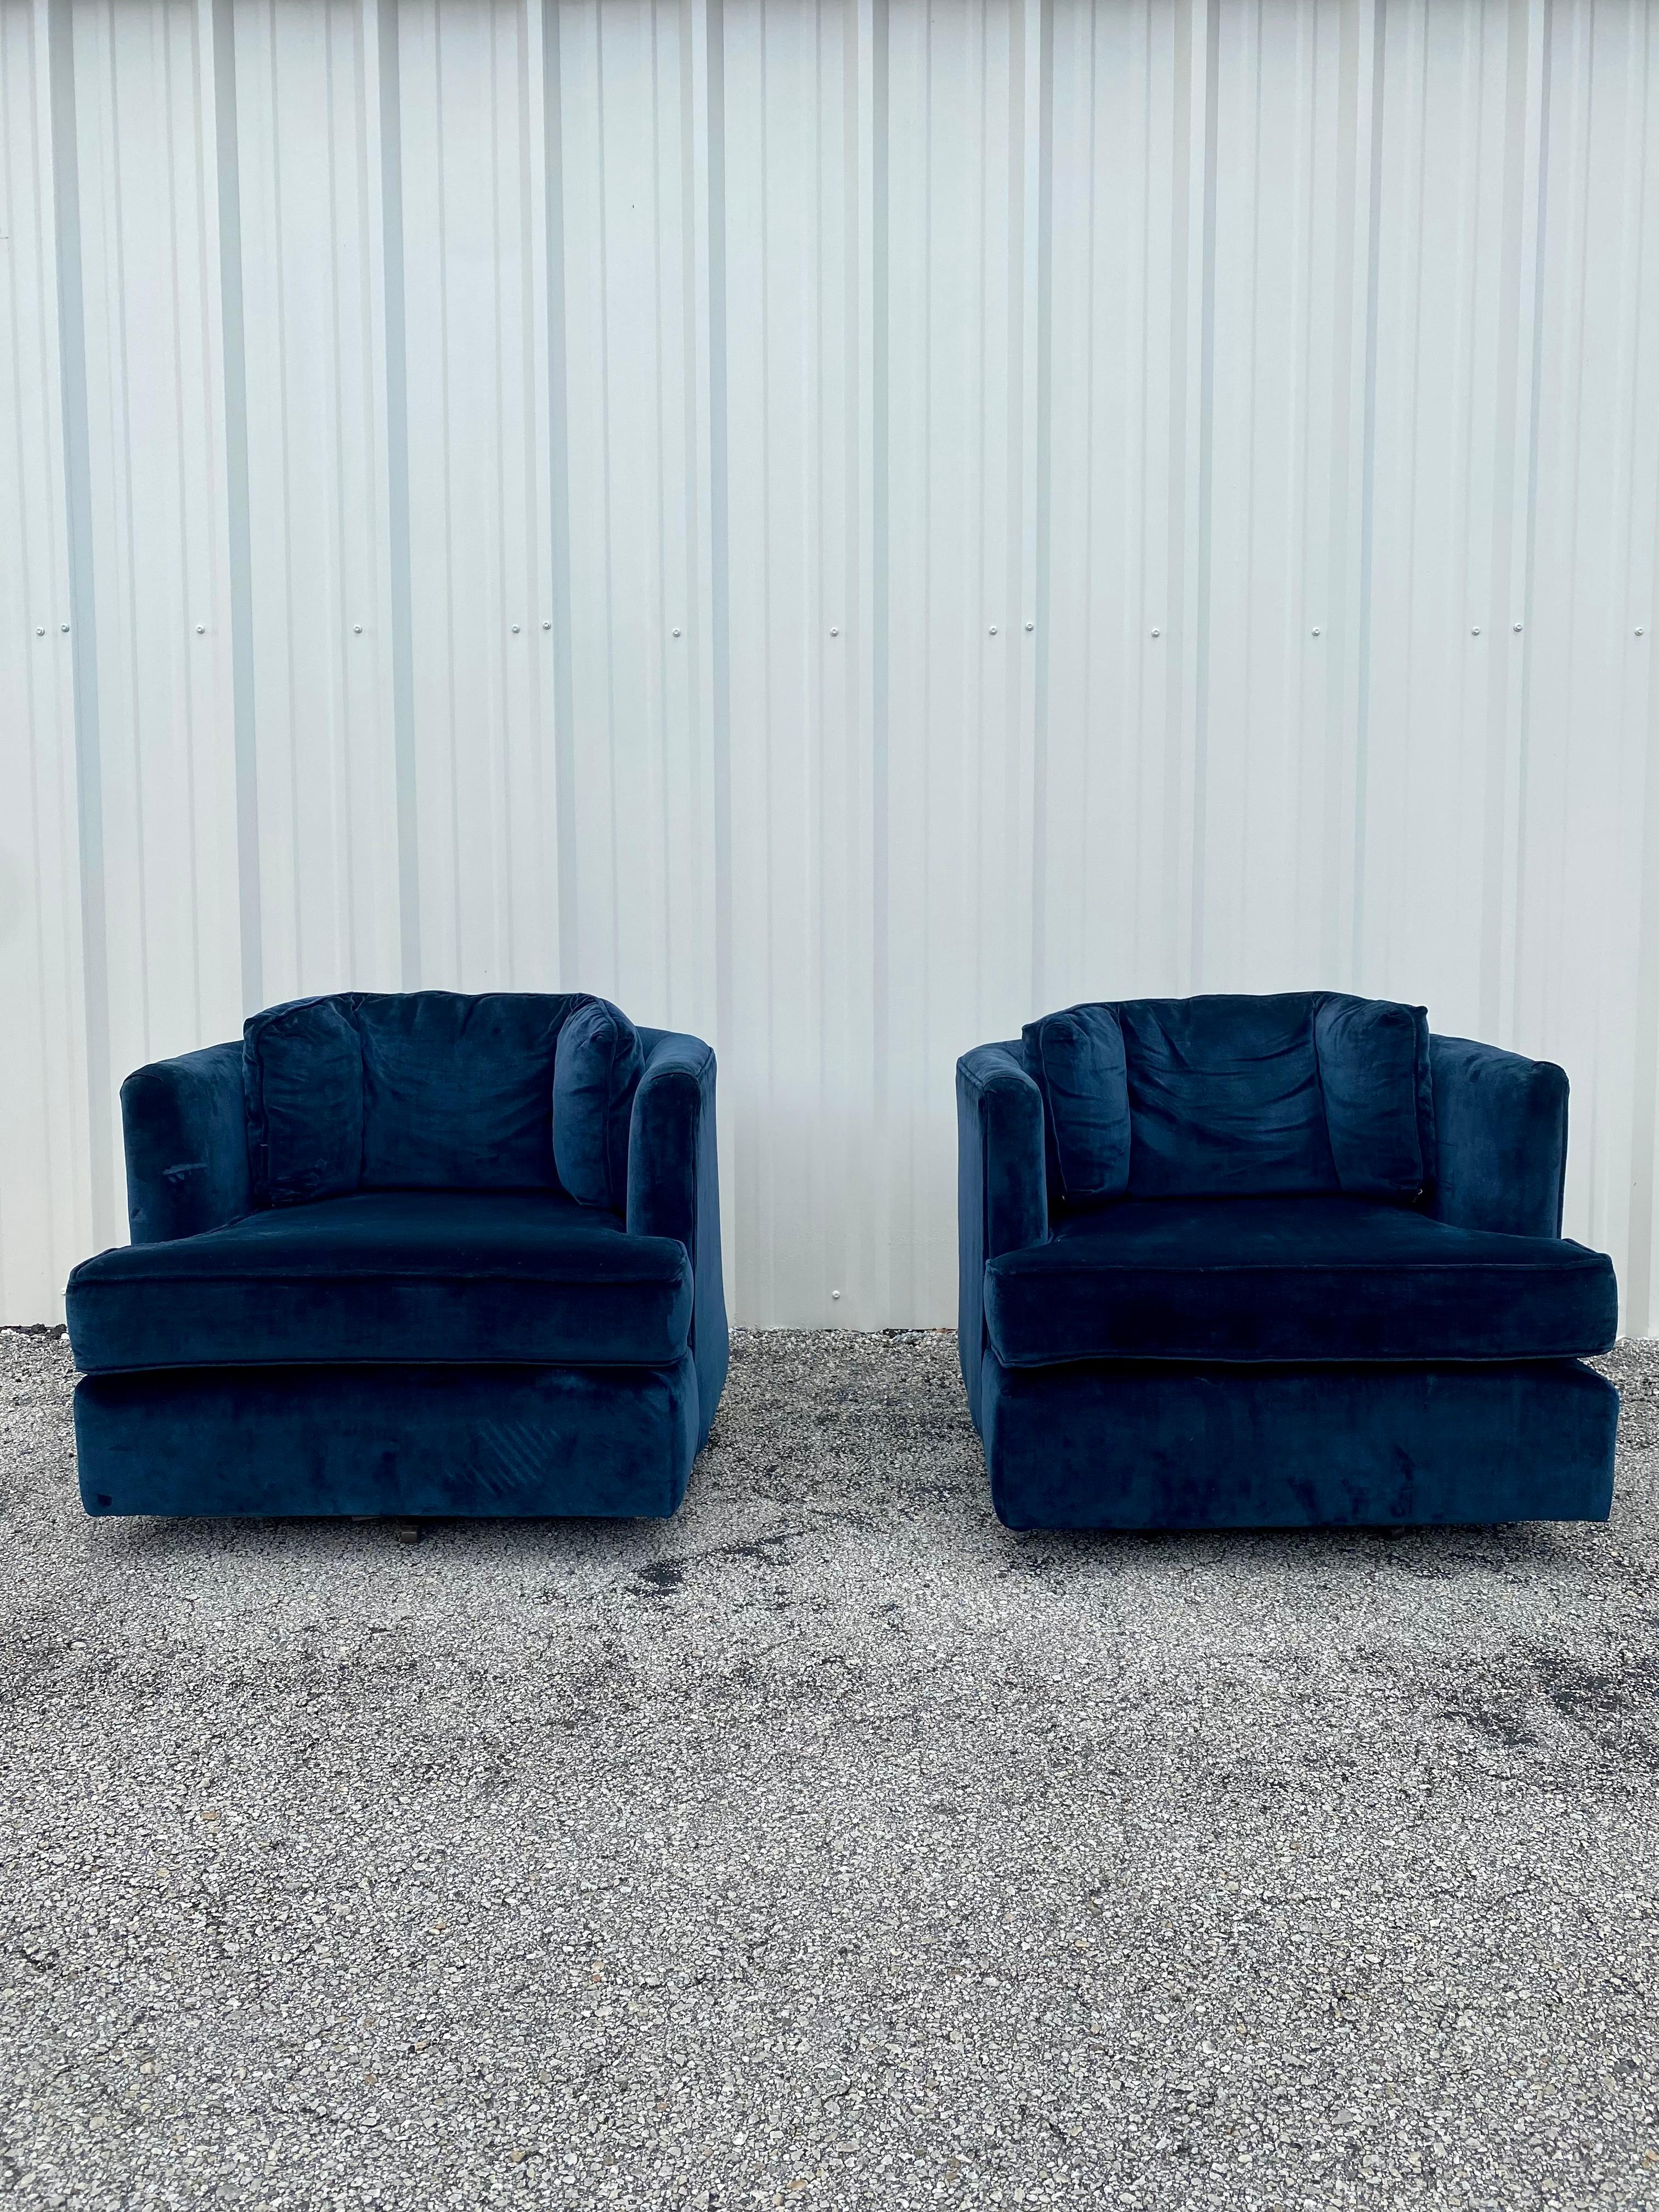 Ces chaises pivotantes originales extrêmement rares et élégantes, tapissées de velours bleu marine, sont pleines de personnalité ! Une conception exceptionnelle est exposée partout. Leur forme magnifique et sculpturale est attribuée à Milo Baughman.